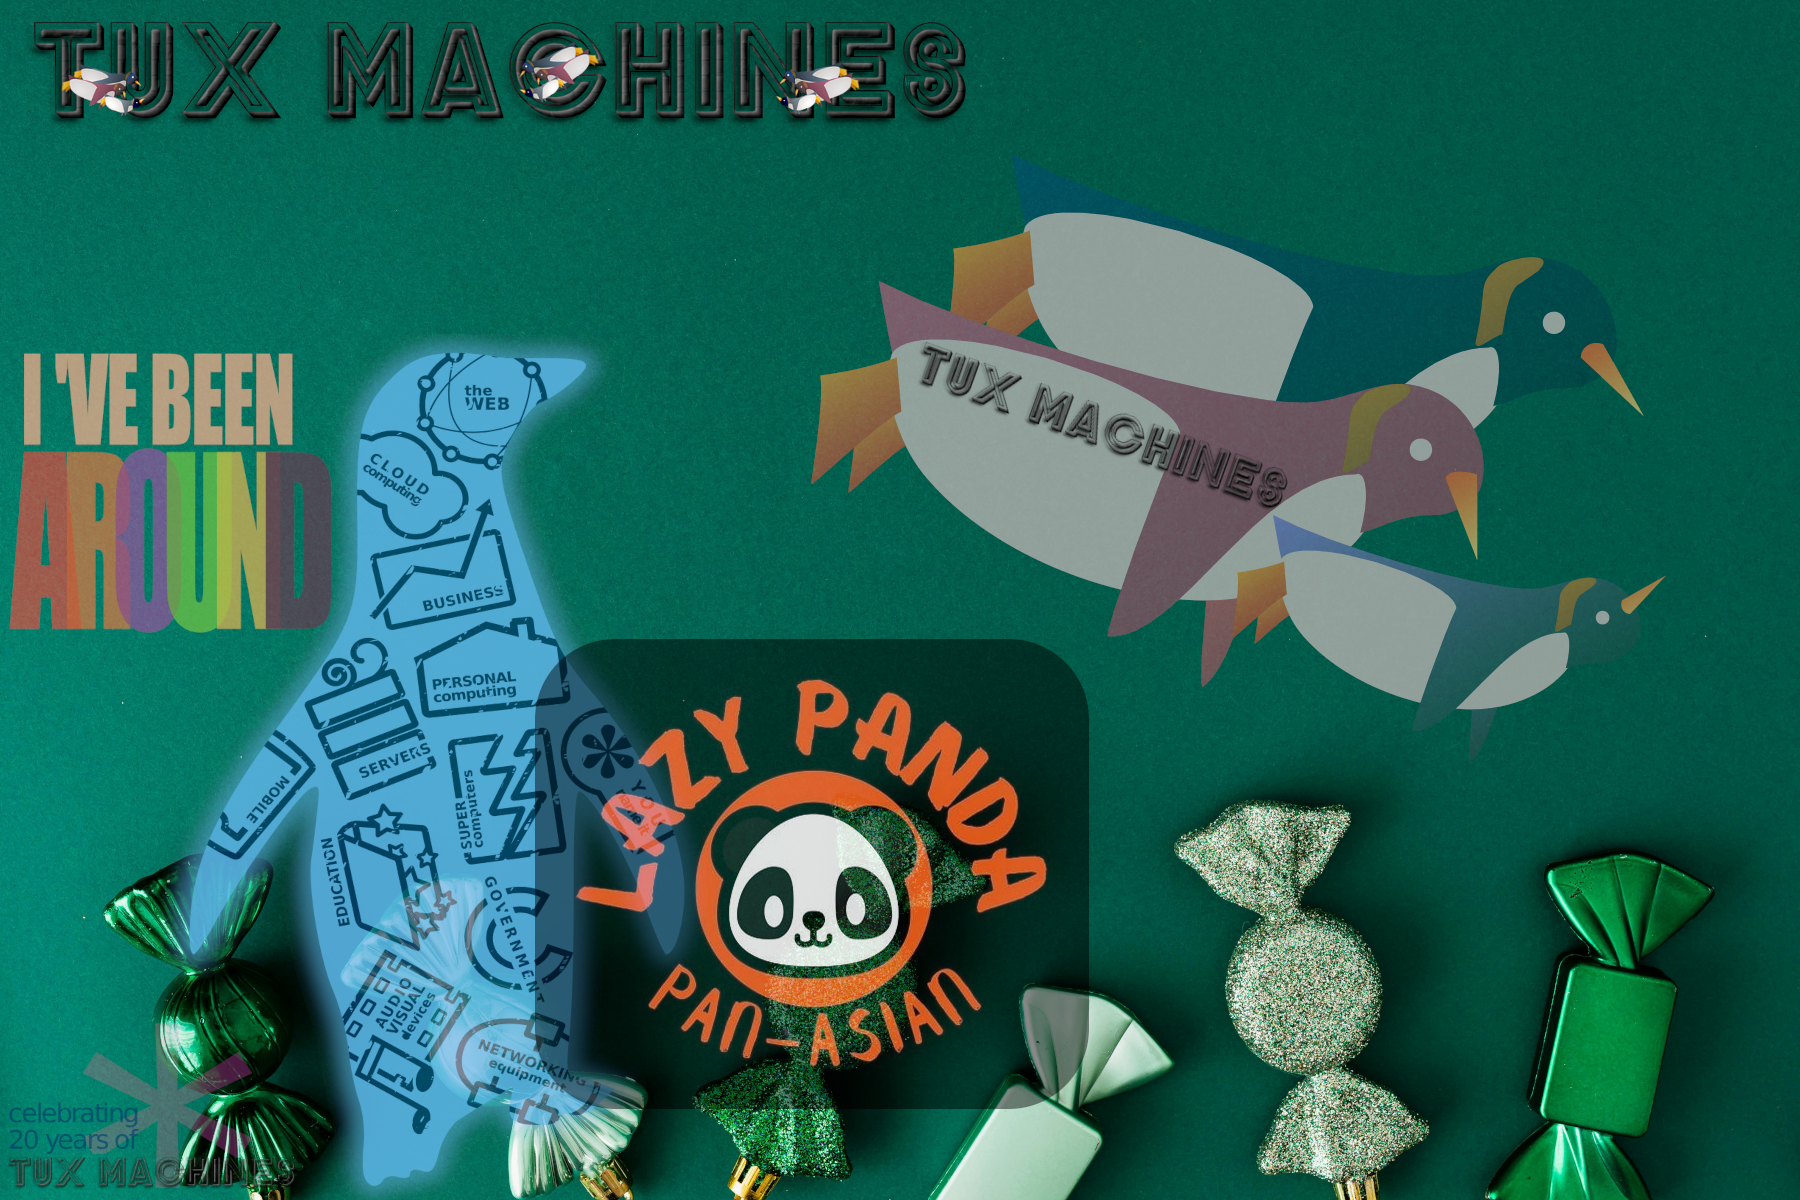 Tux Machines and 'Lazy Panda'